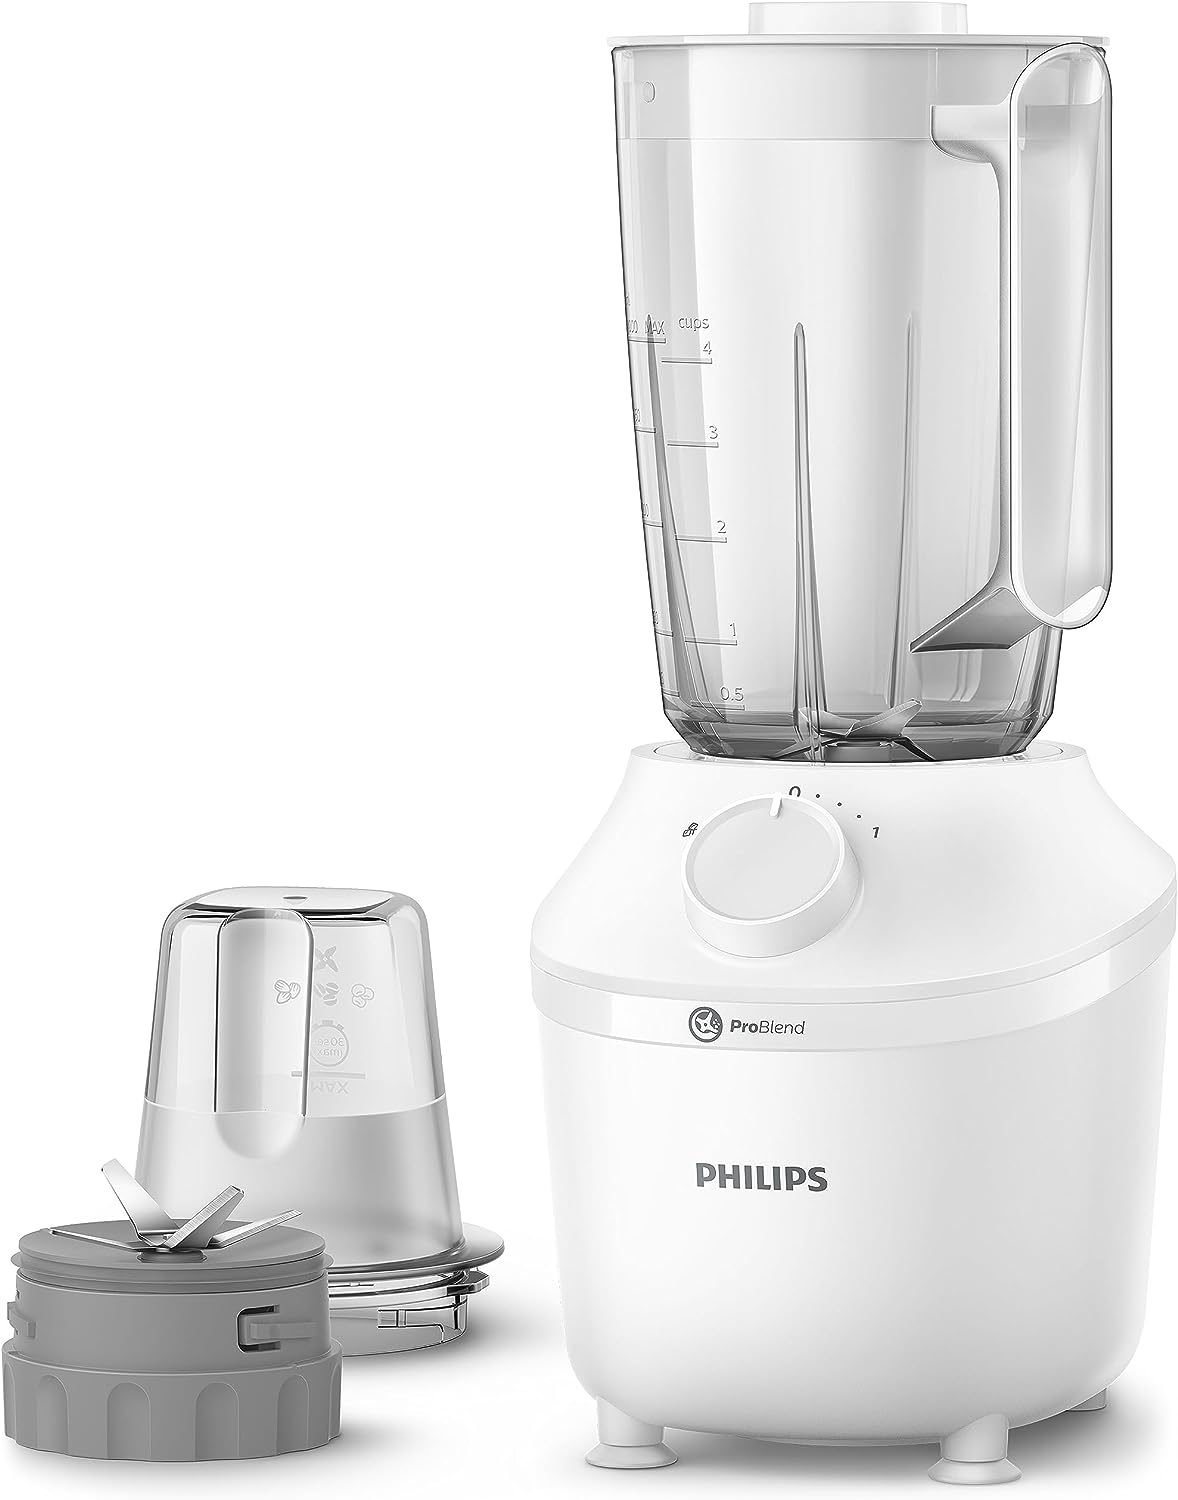 Philips Blender 450W - 1.9L, White HR2041/10 + Mill